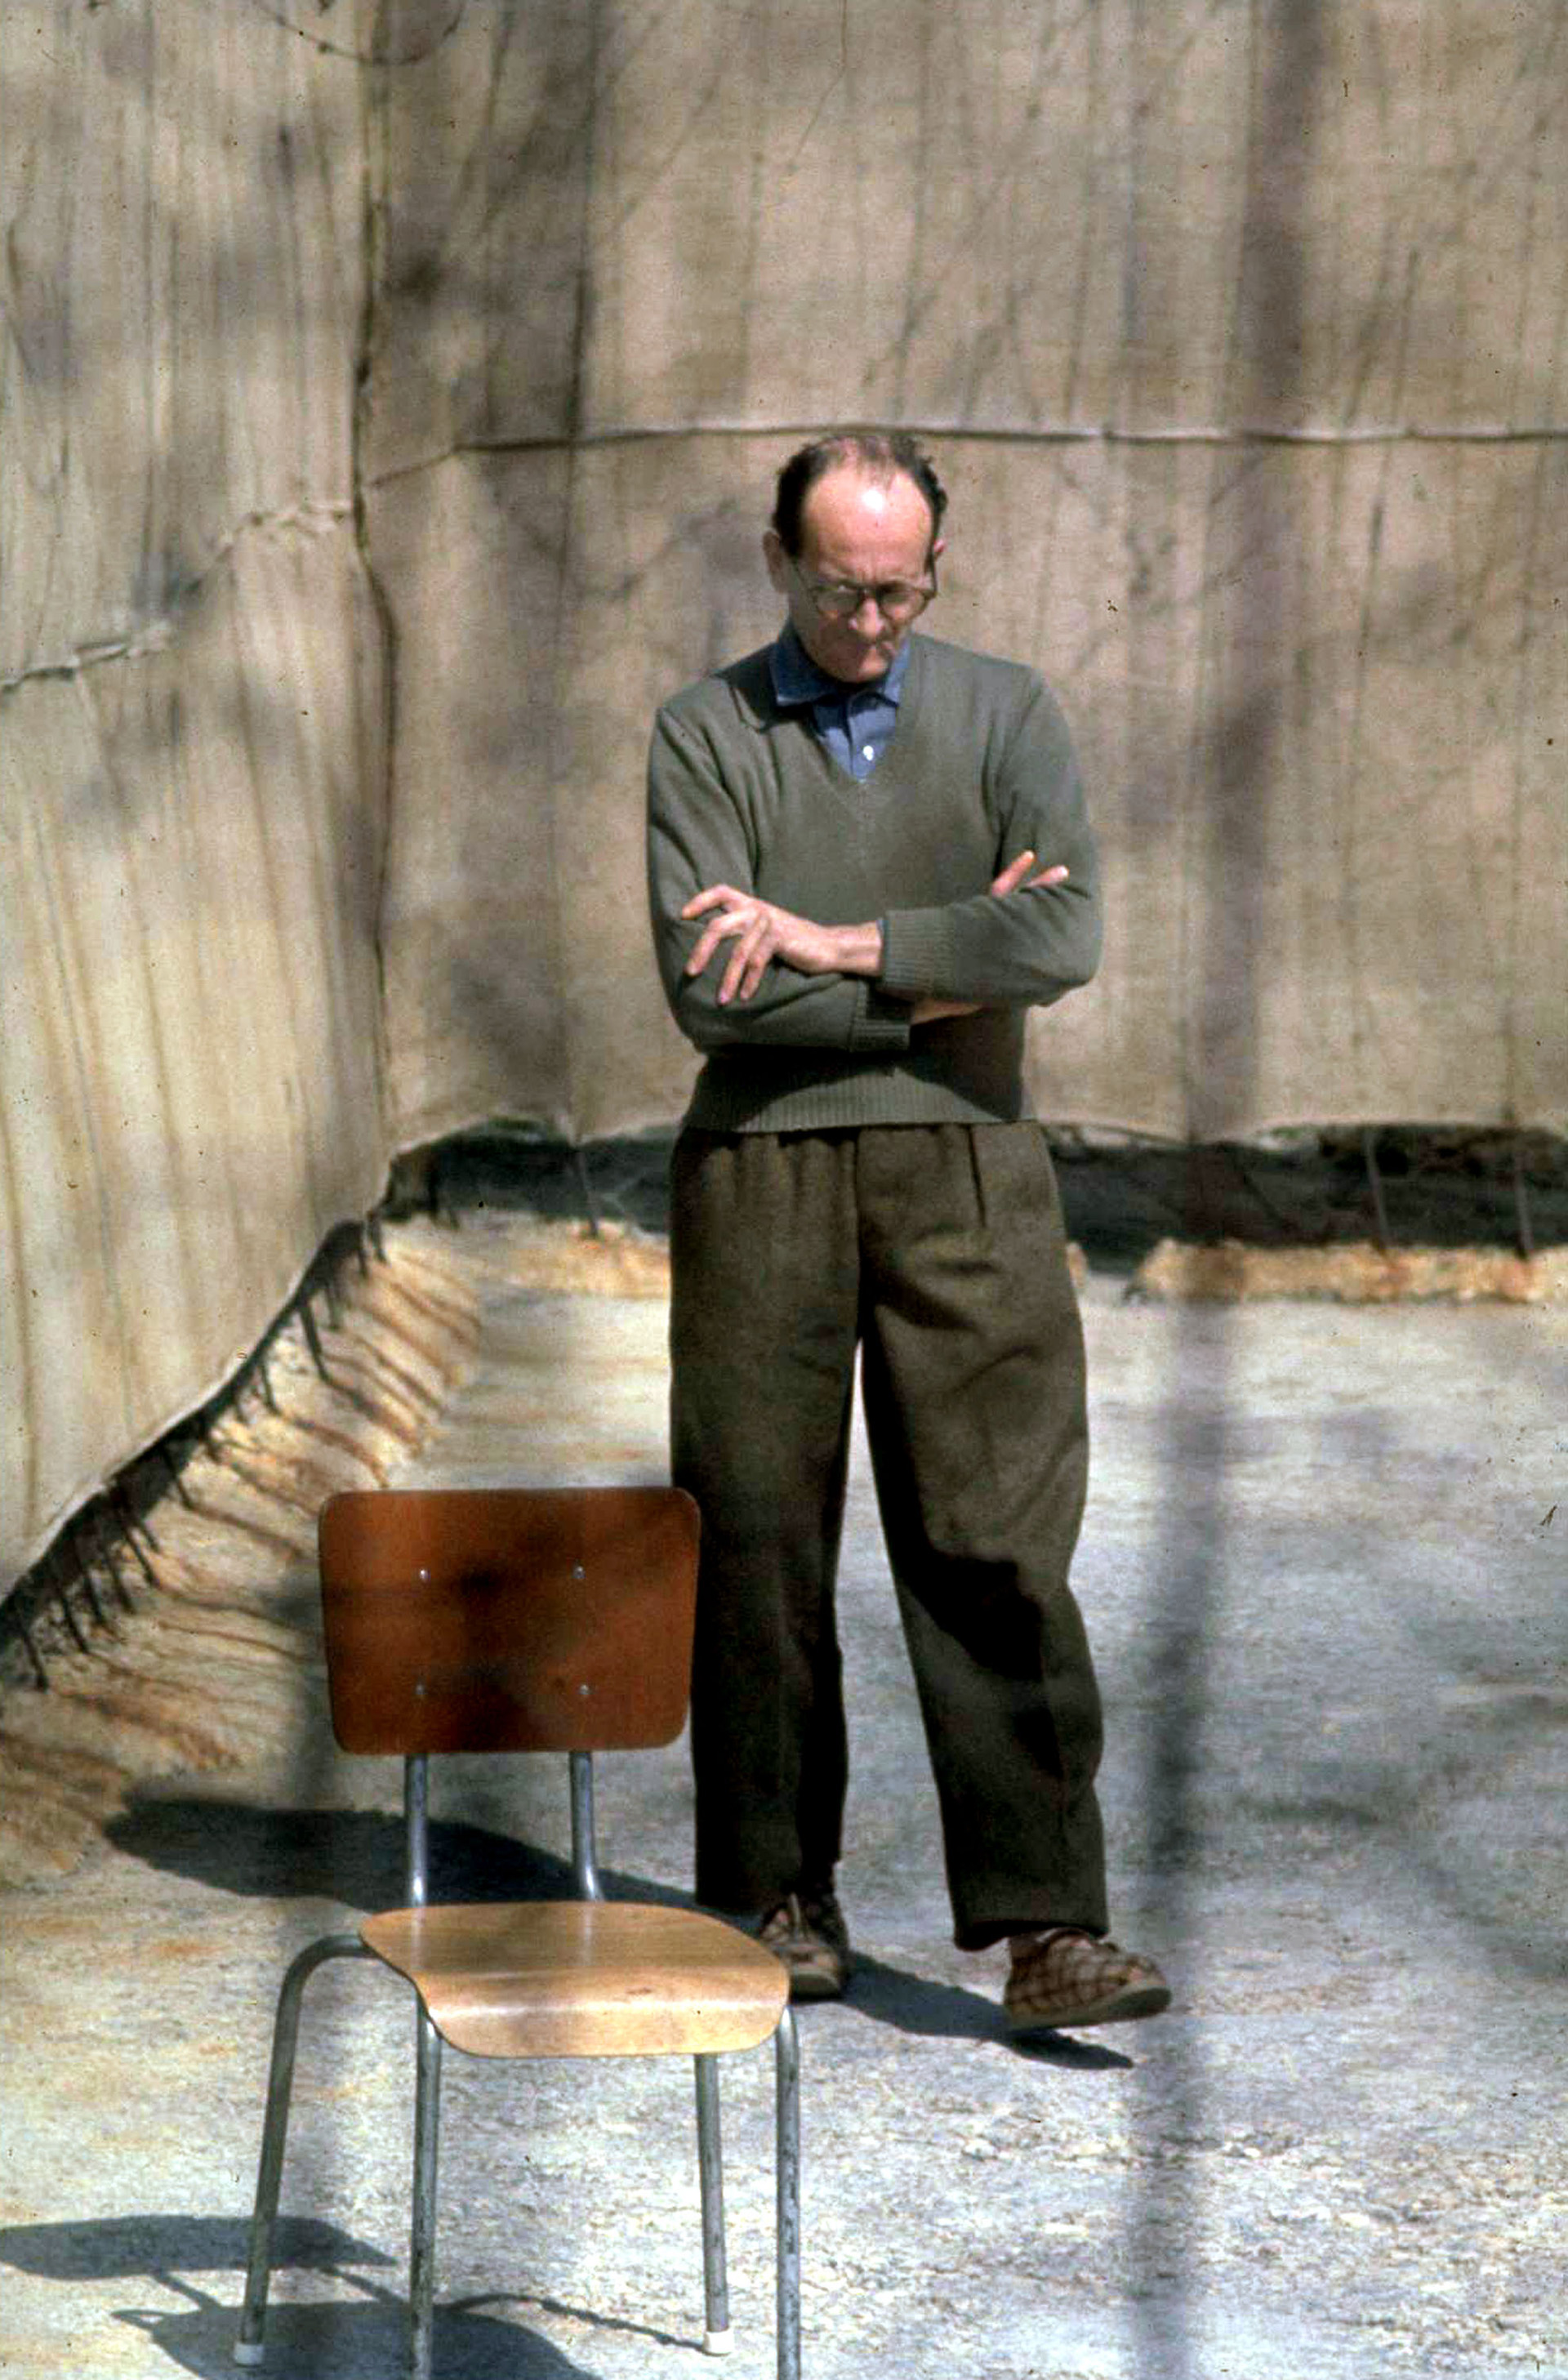 El criminal nazi Adolf Eichmann (1906 - 1962) en la prisión de Israel, luego de ser capturado por el Mossad en la Argentina (John Milli/GPO via Getty Images)